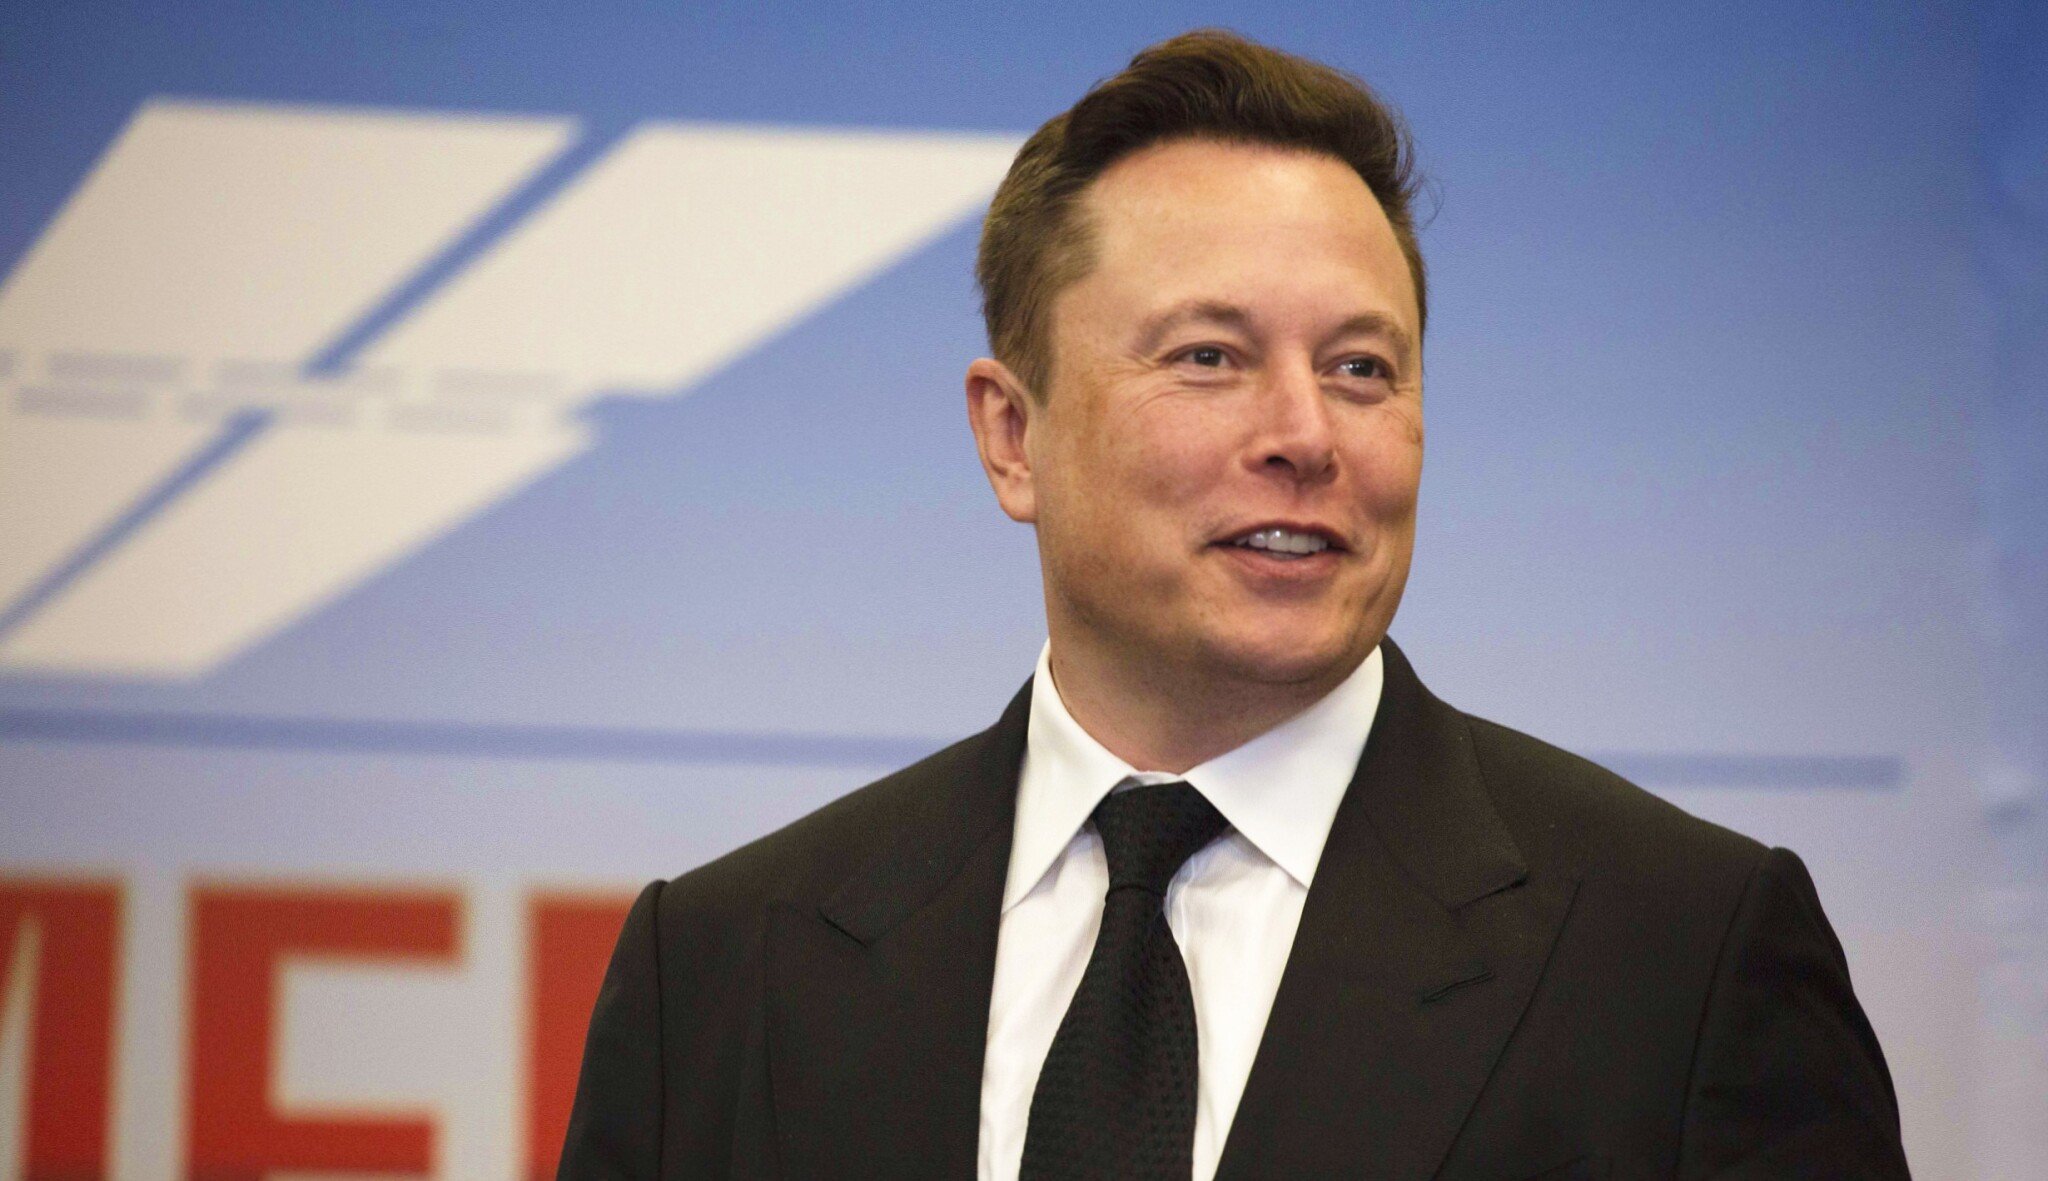 Elon Musk prodal akcie Tesly v hodnotě pěti miliard dolarů